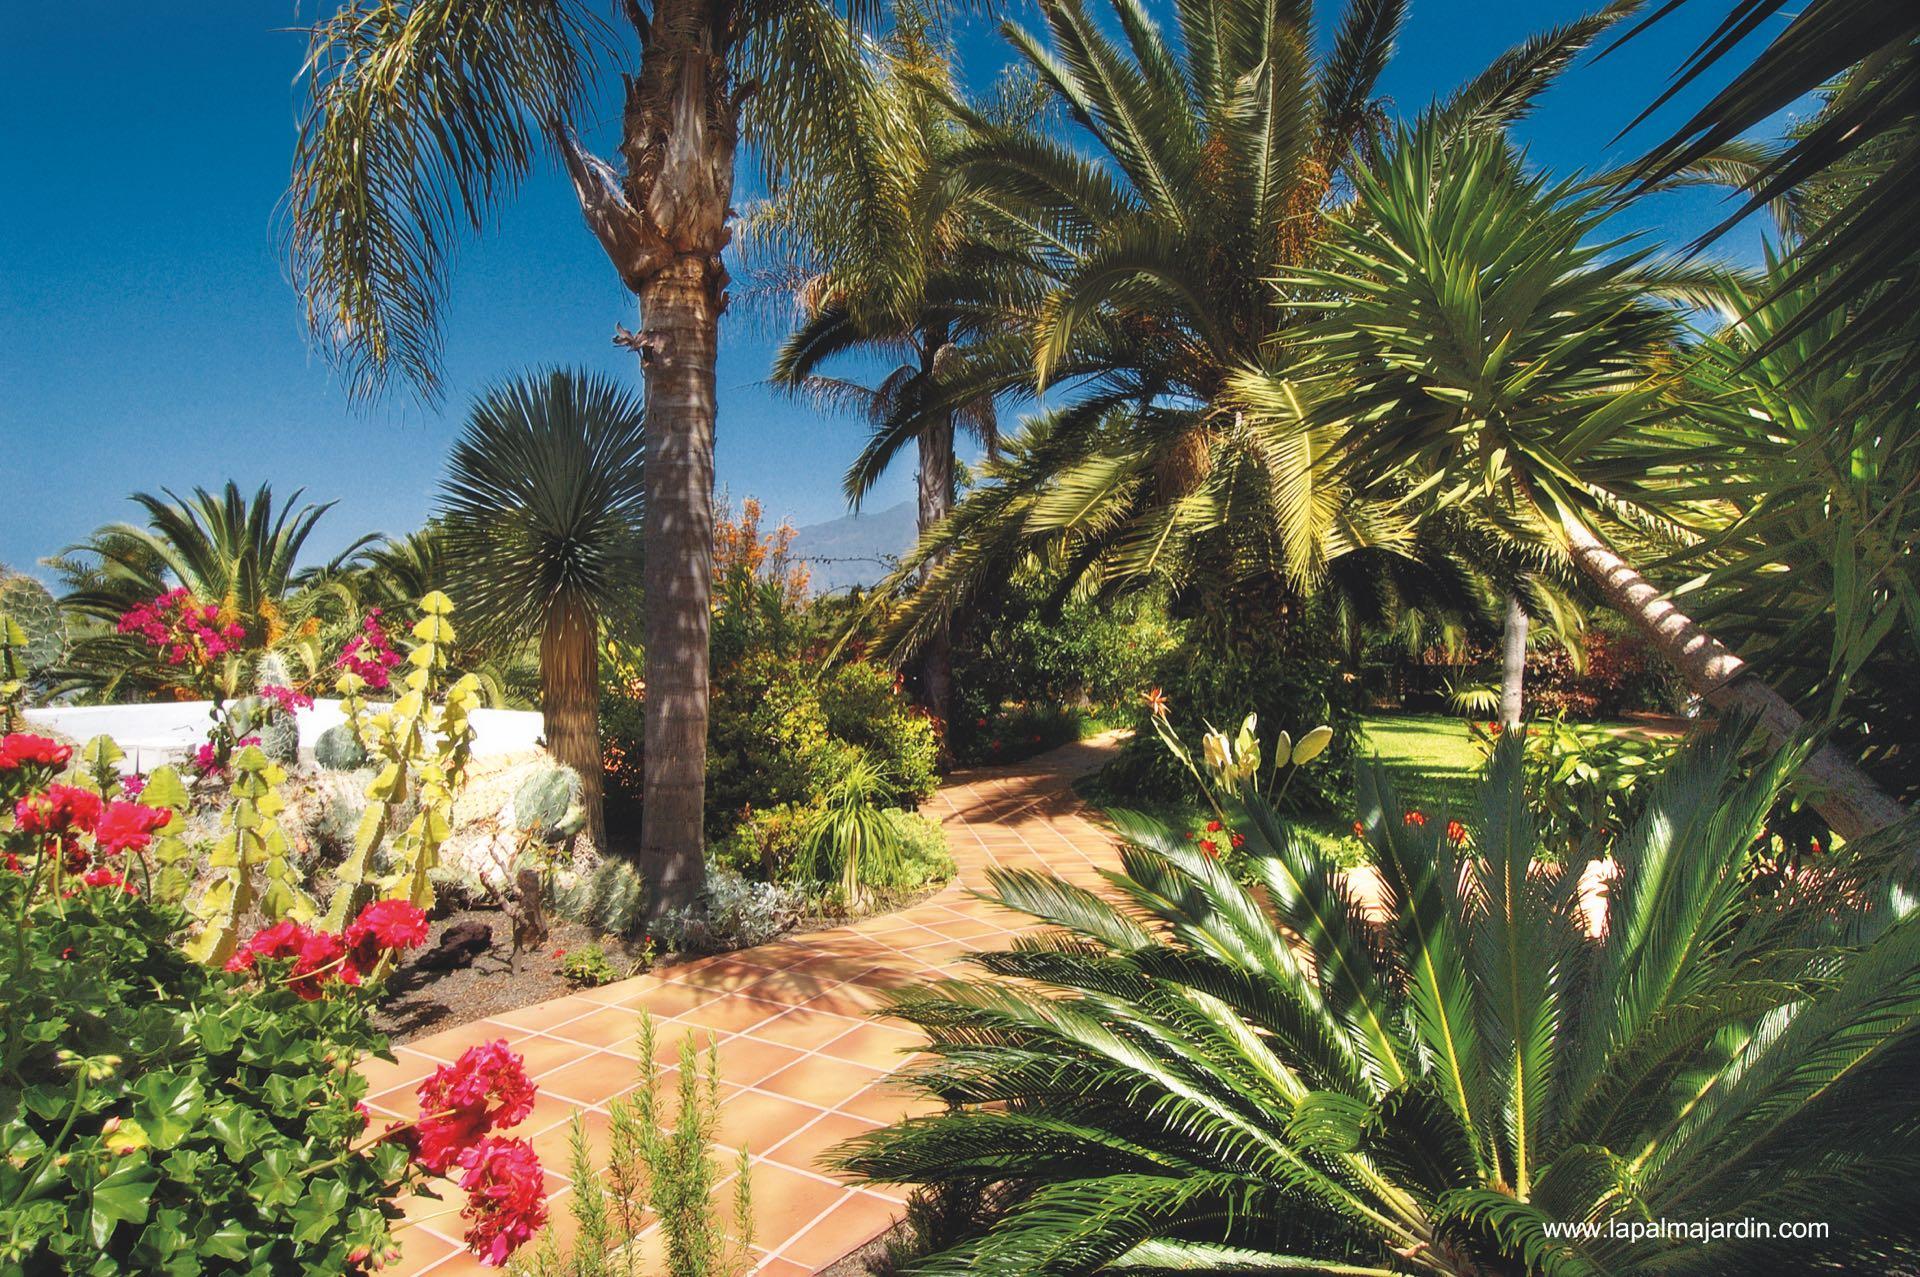 La Palma Jardin